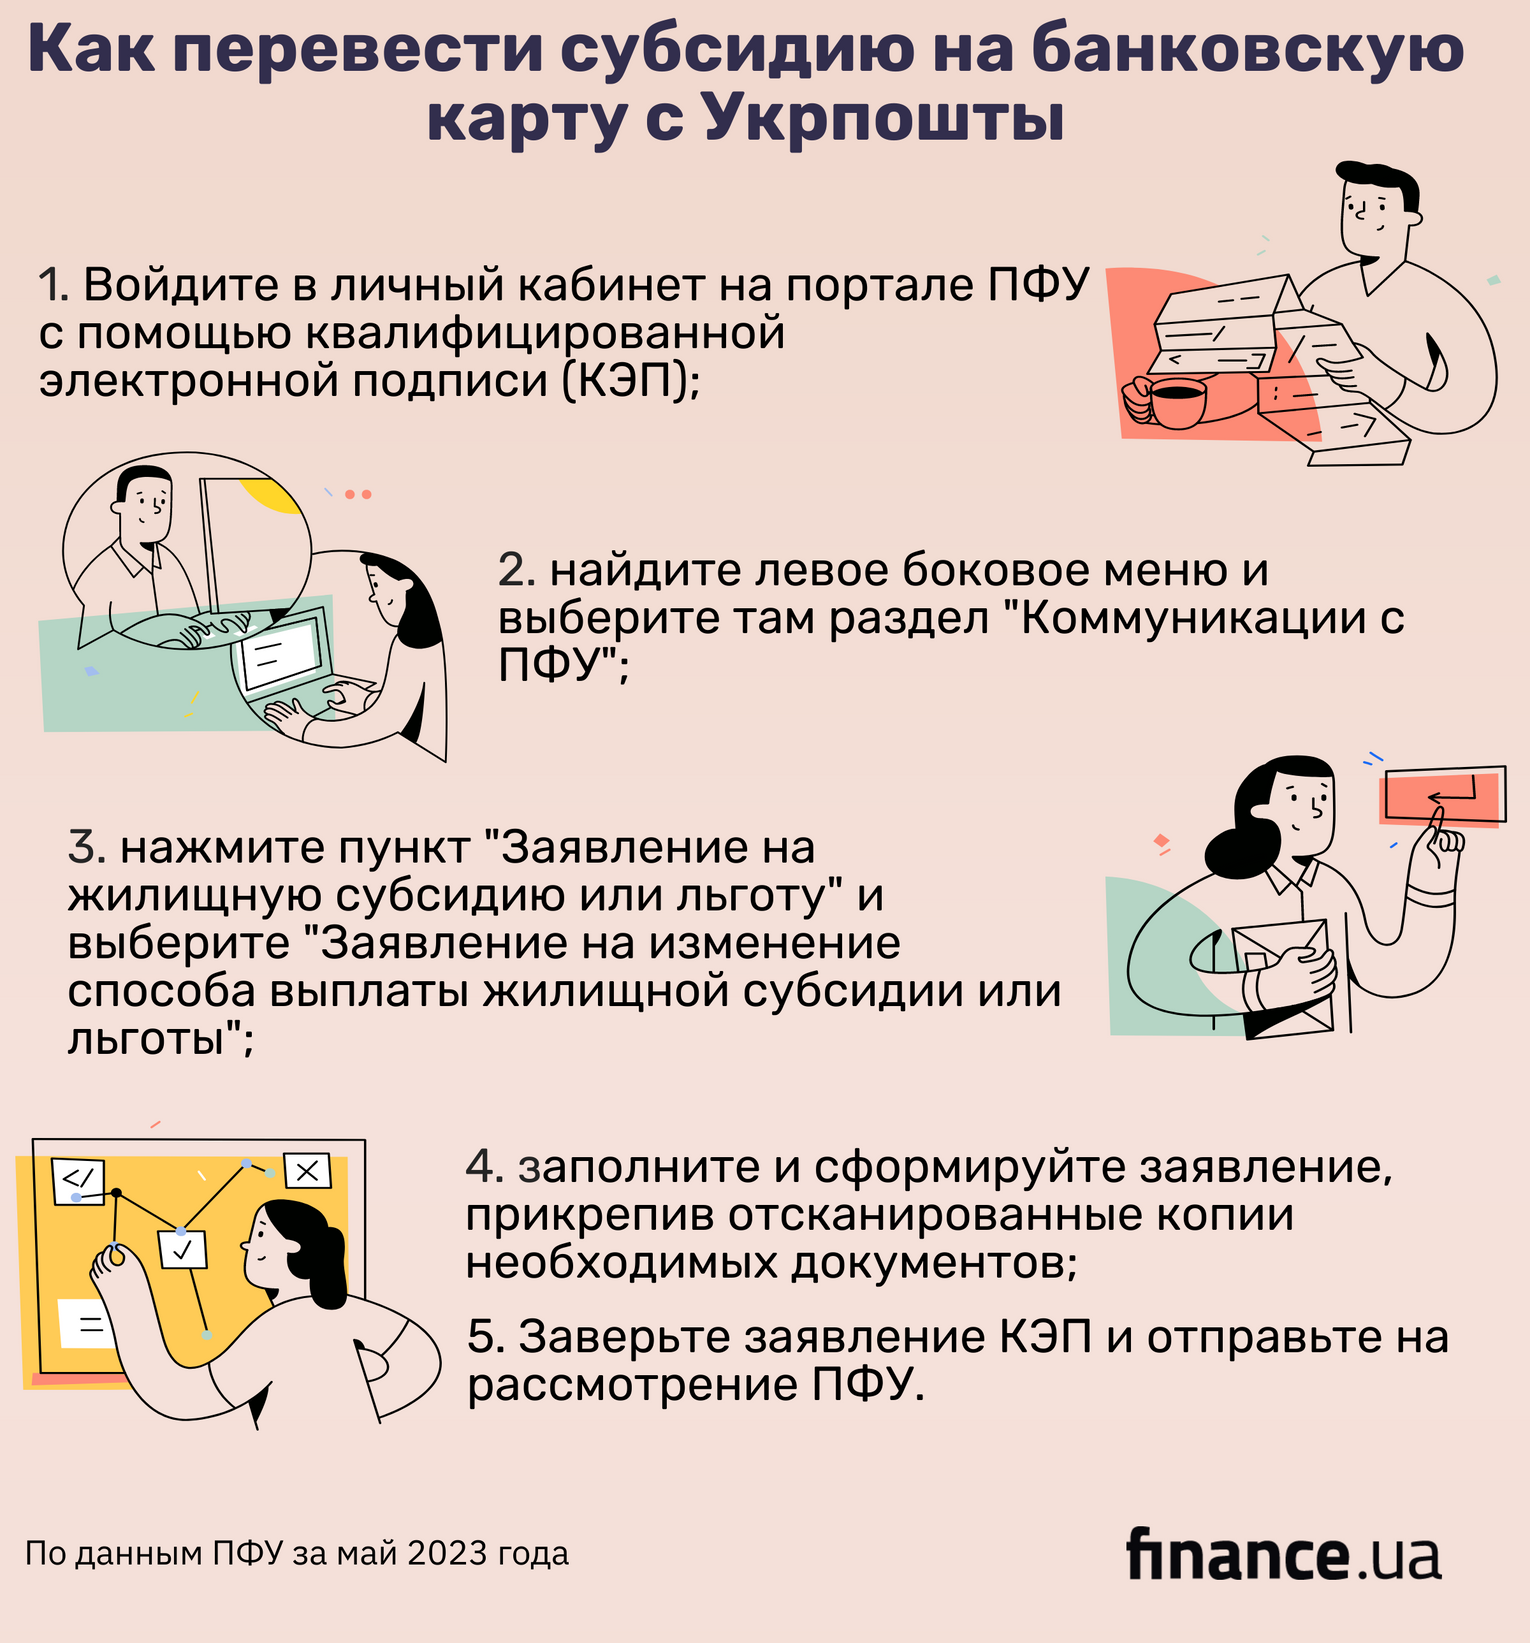 Украинцам рассказали, как перевести субсидии с Укрпочты на банковскую карту 